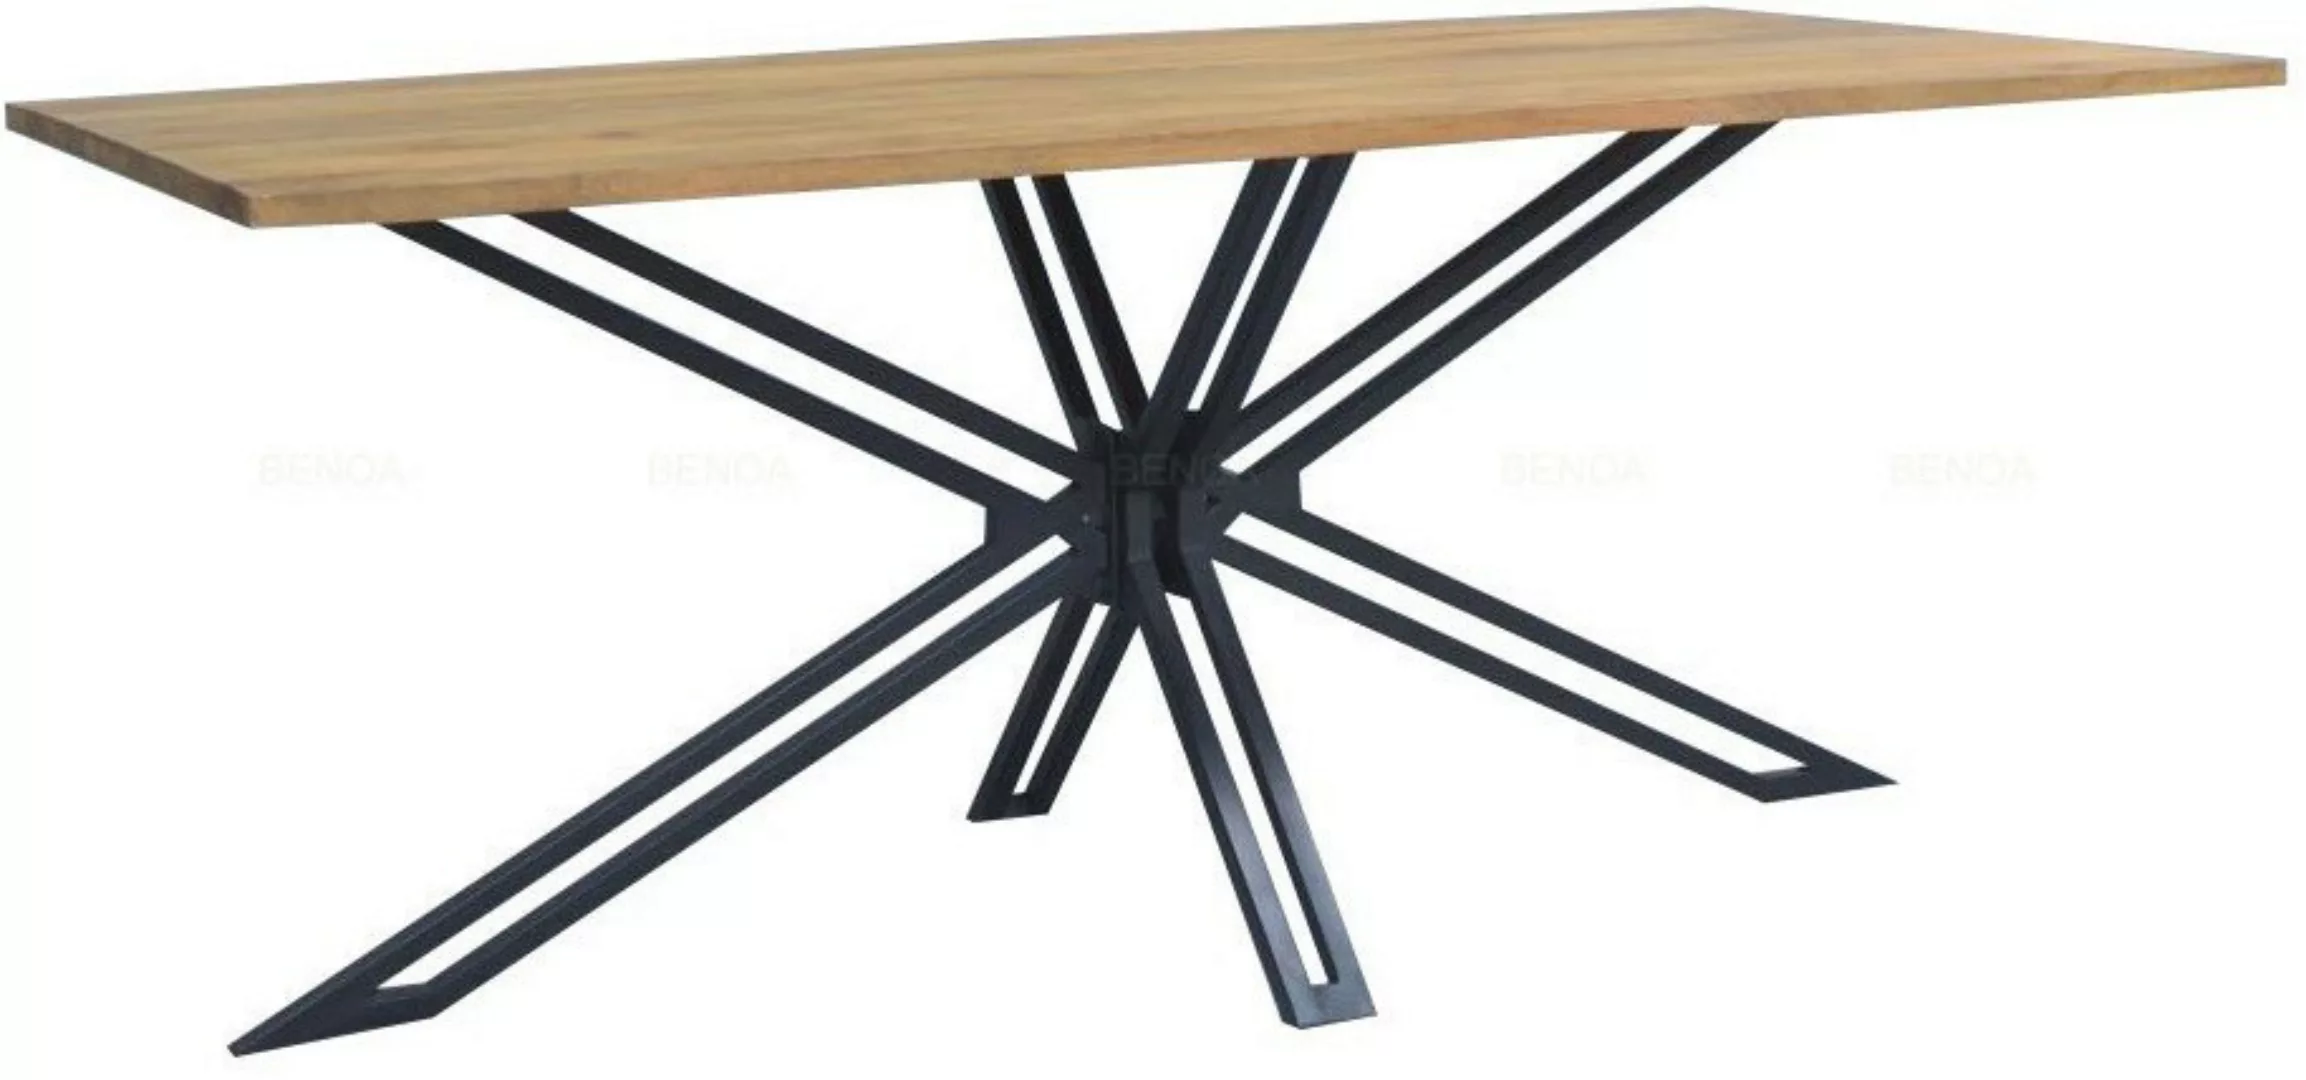 Esstisch Tisch Küchentisch Metall Massiv Mangoholz Industrial Loft günstig online kaufen